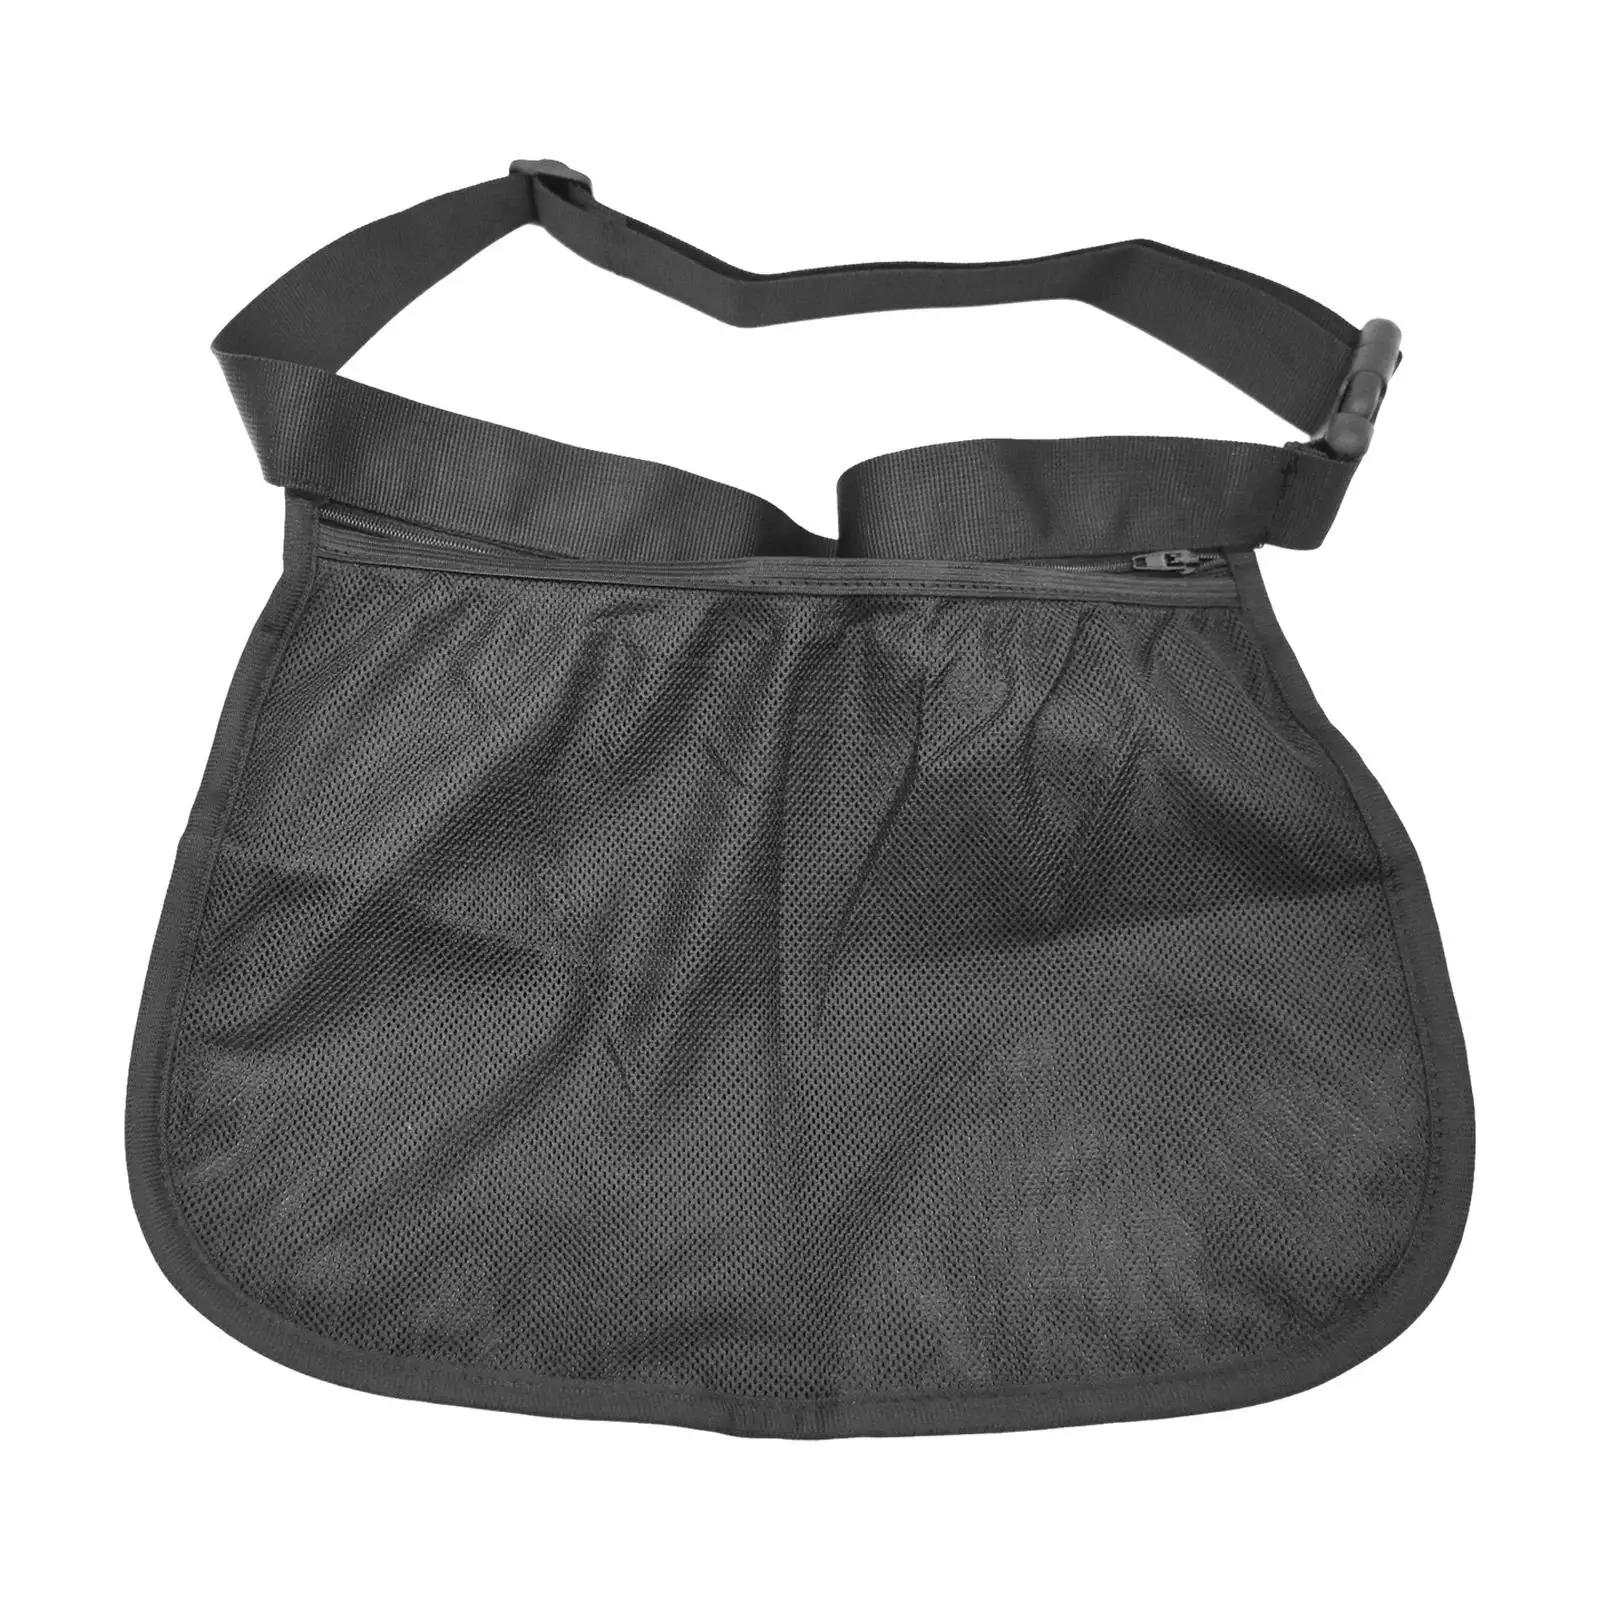 Tennis Ball Holder Mesh Storage Bag for Women Men Storing Balls and Phones